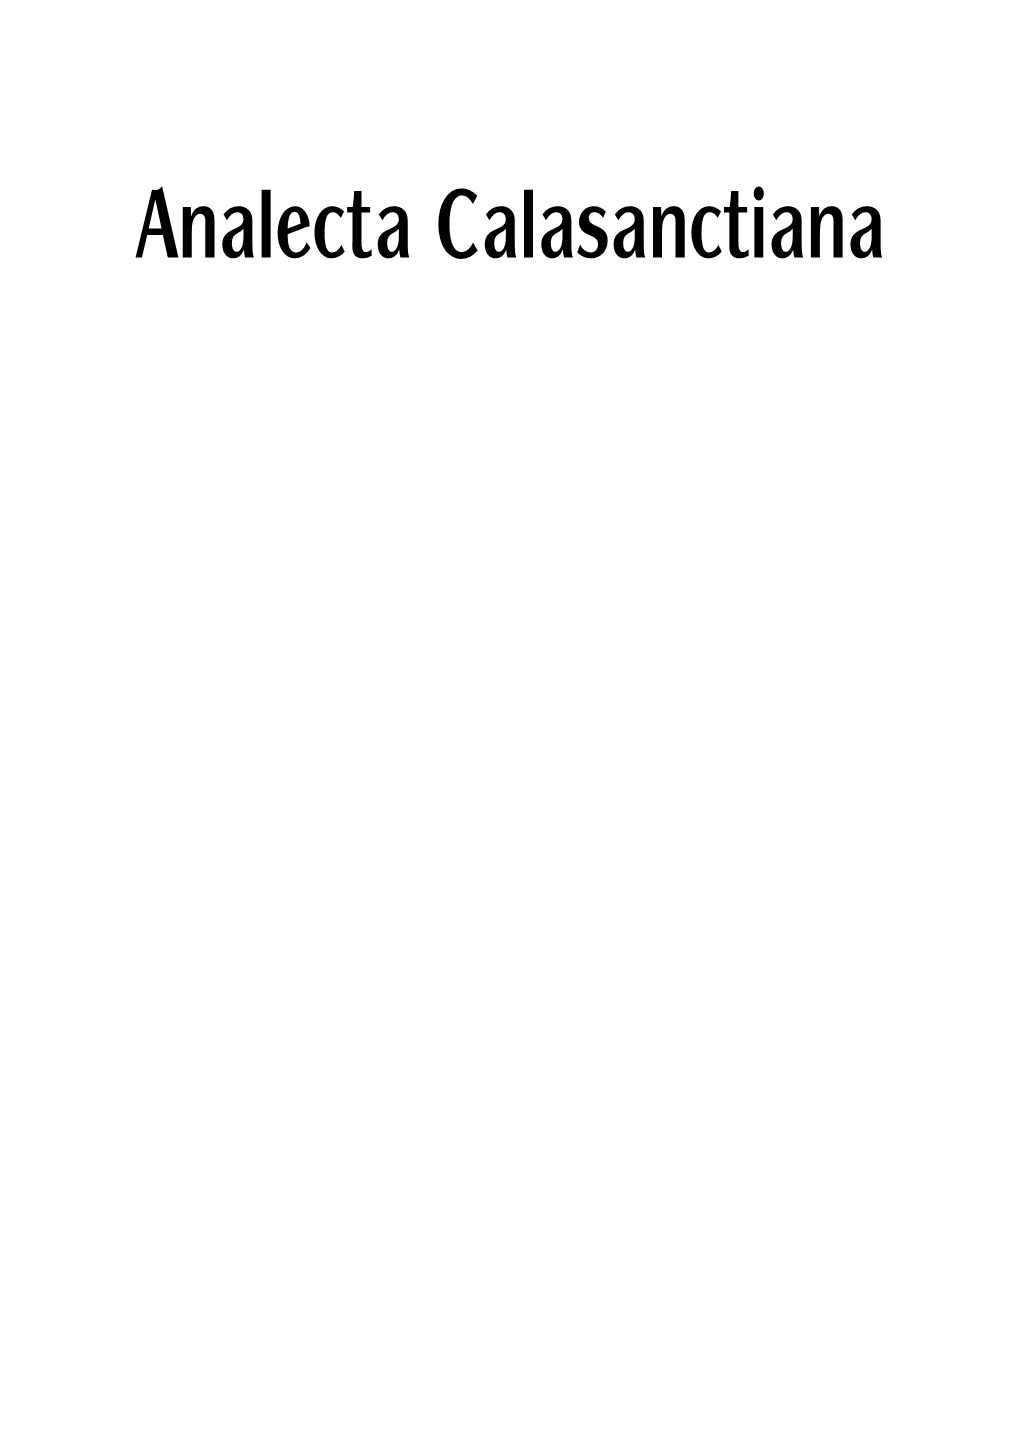 Analecta Calasanctiana